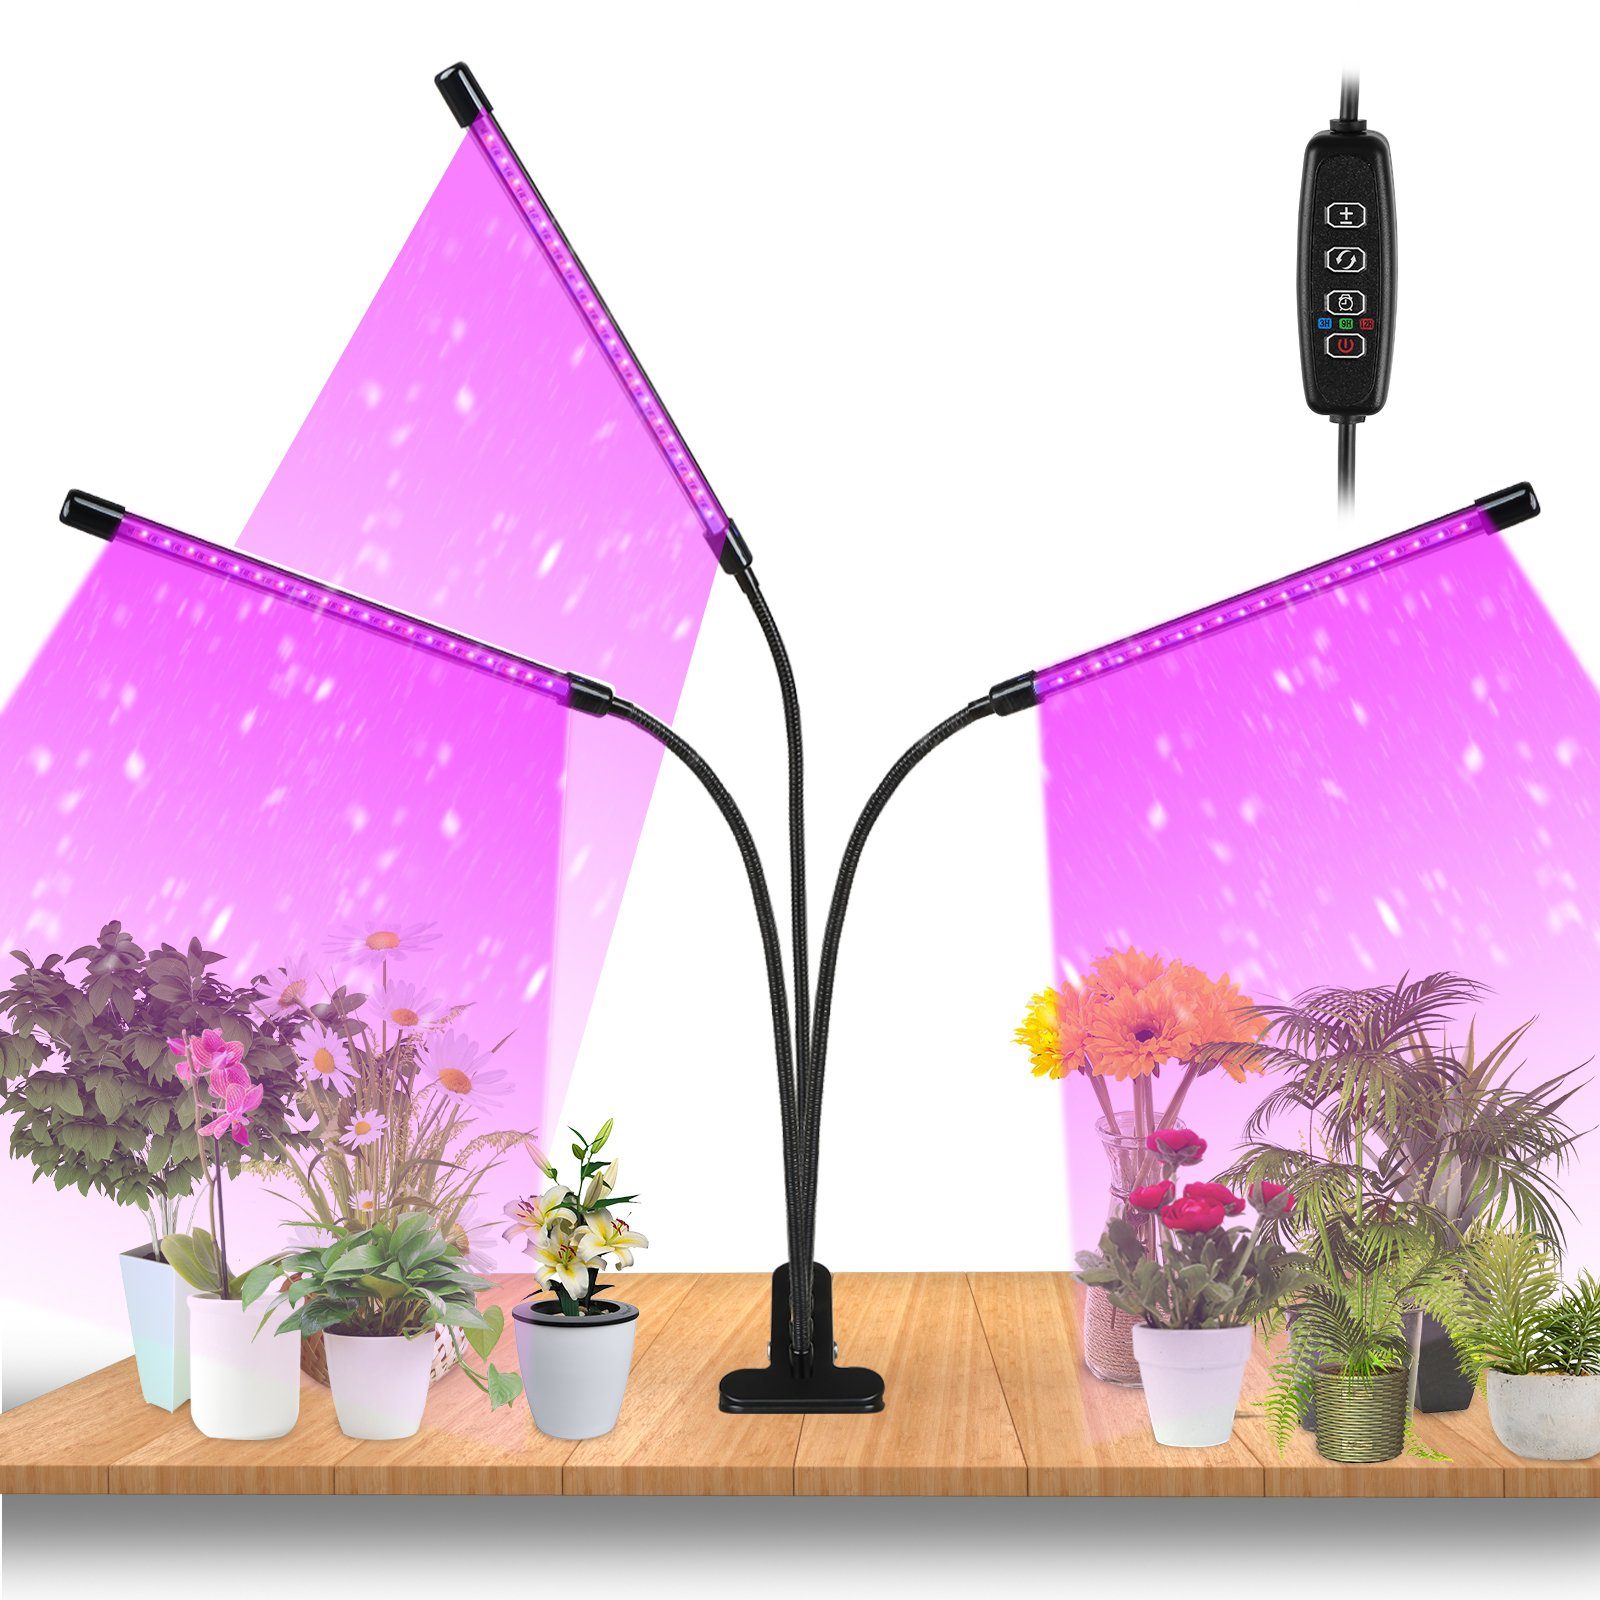 Clanmacy Pflanzenlampe 30W/40W LED Pflanzenlicht mit 3 Licht Modus, 10 Helligkeitsstufen, Wachstumslampe Vollspektrum, 360°Einstellbar Grow Lampe mit Zeitschaltuhr für Gartenarbeit Bonsais | Pflanzenlampen